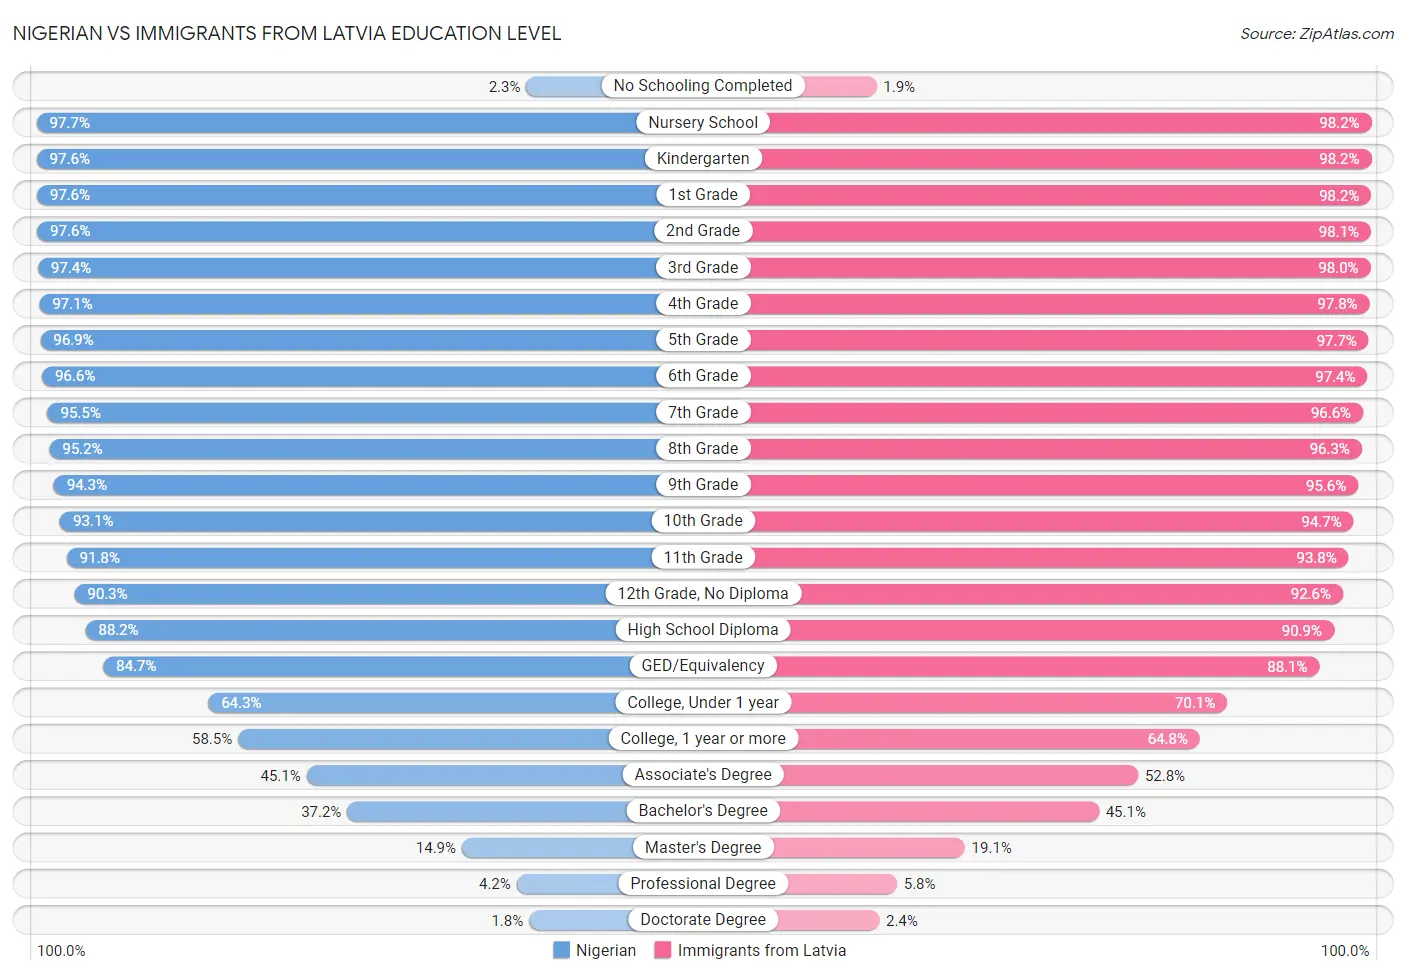 Nigerian vs Immigrants from Latvia Education Level